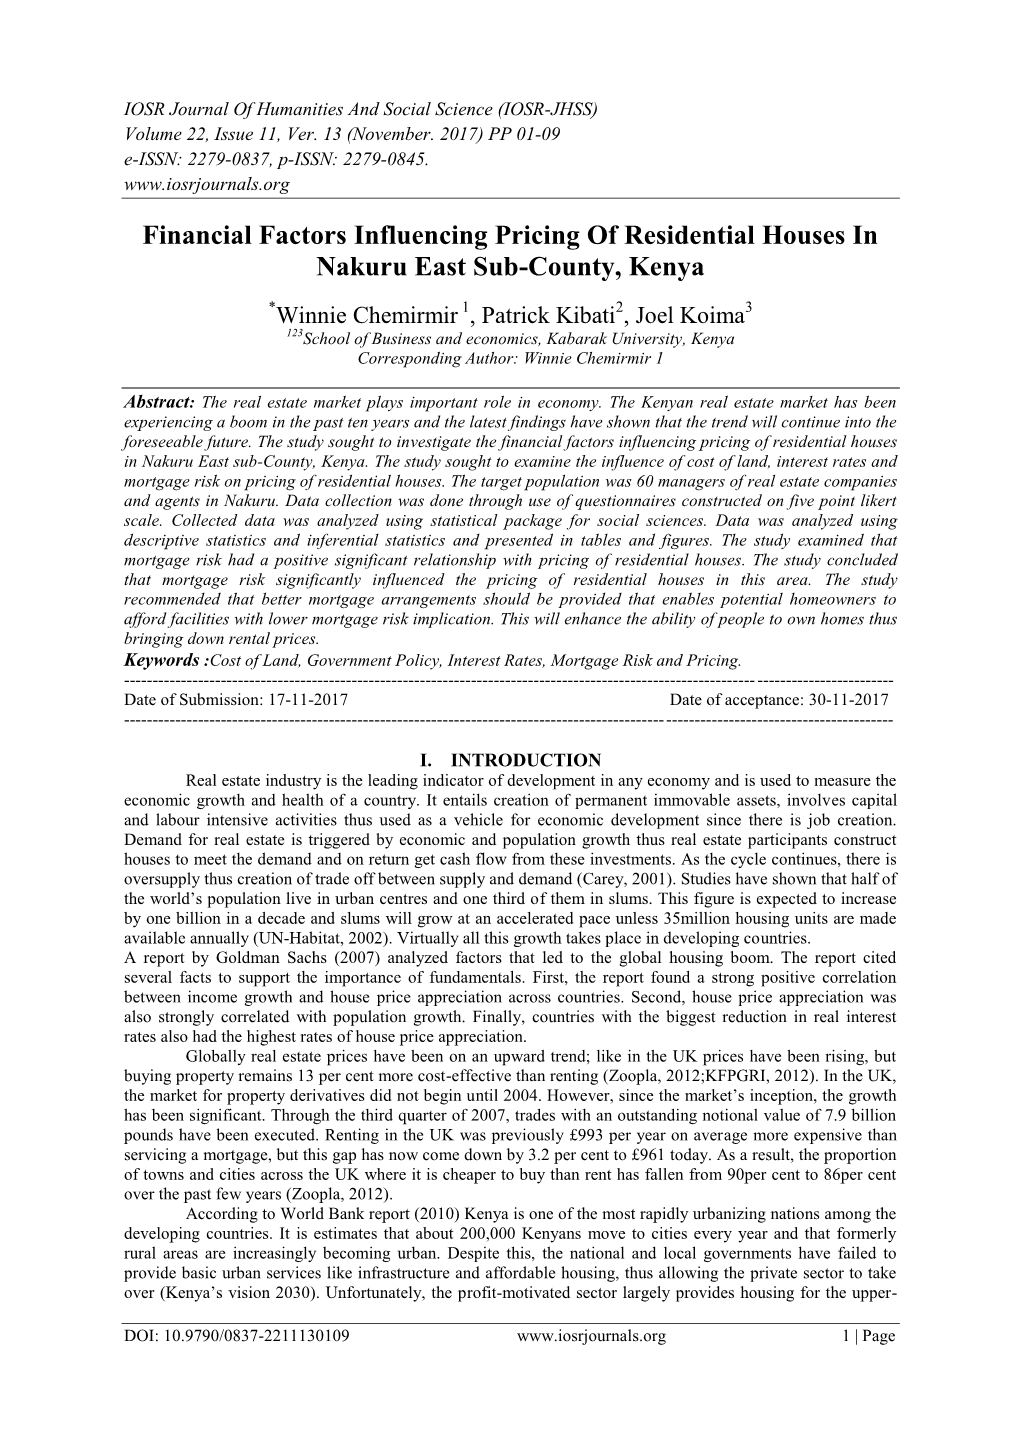 Financial Factors Influencing Pricing of Residential Houses in Nakuru East Sub-County, Kenya